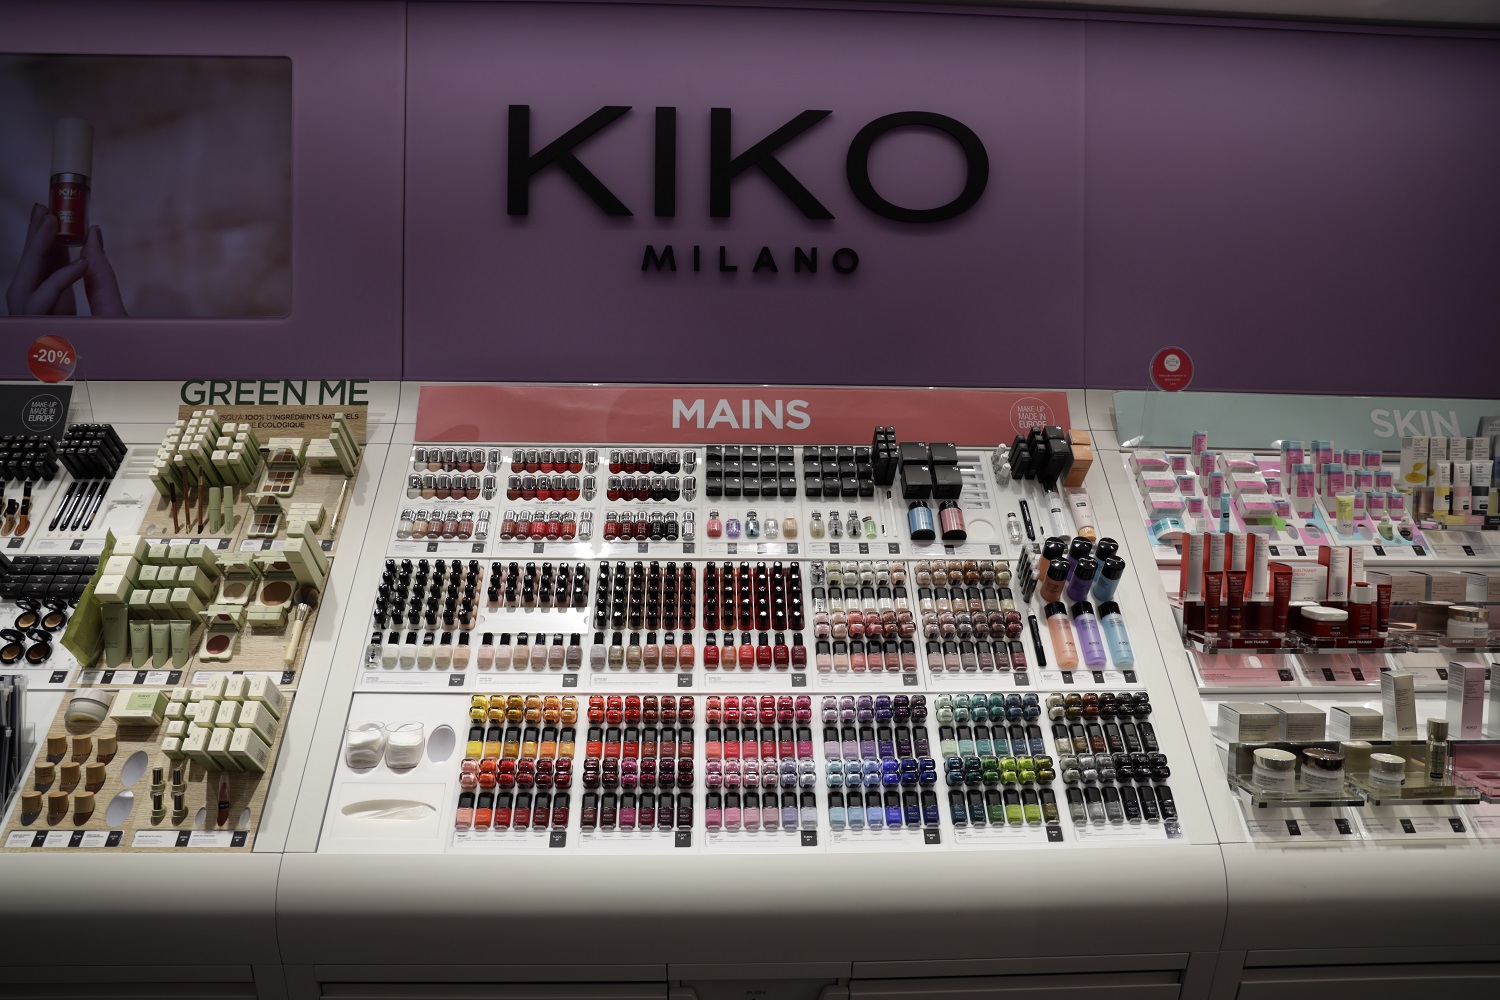 KIKO Milano  Maquillage yeux, visage, lèvres et soin de la peau